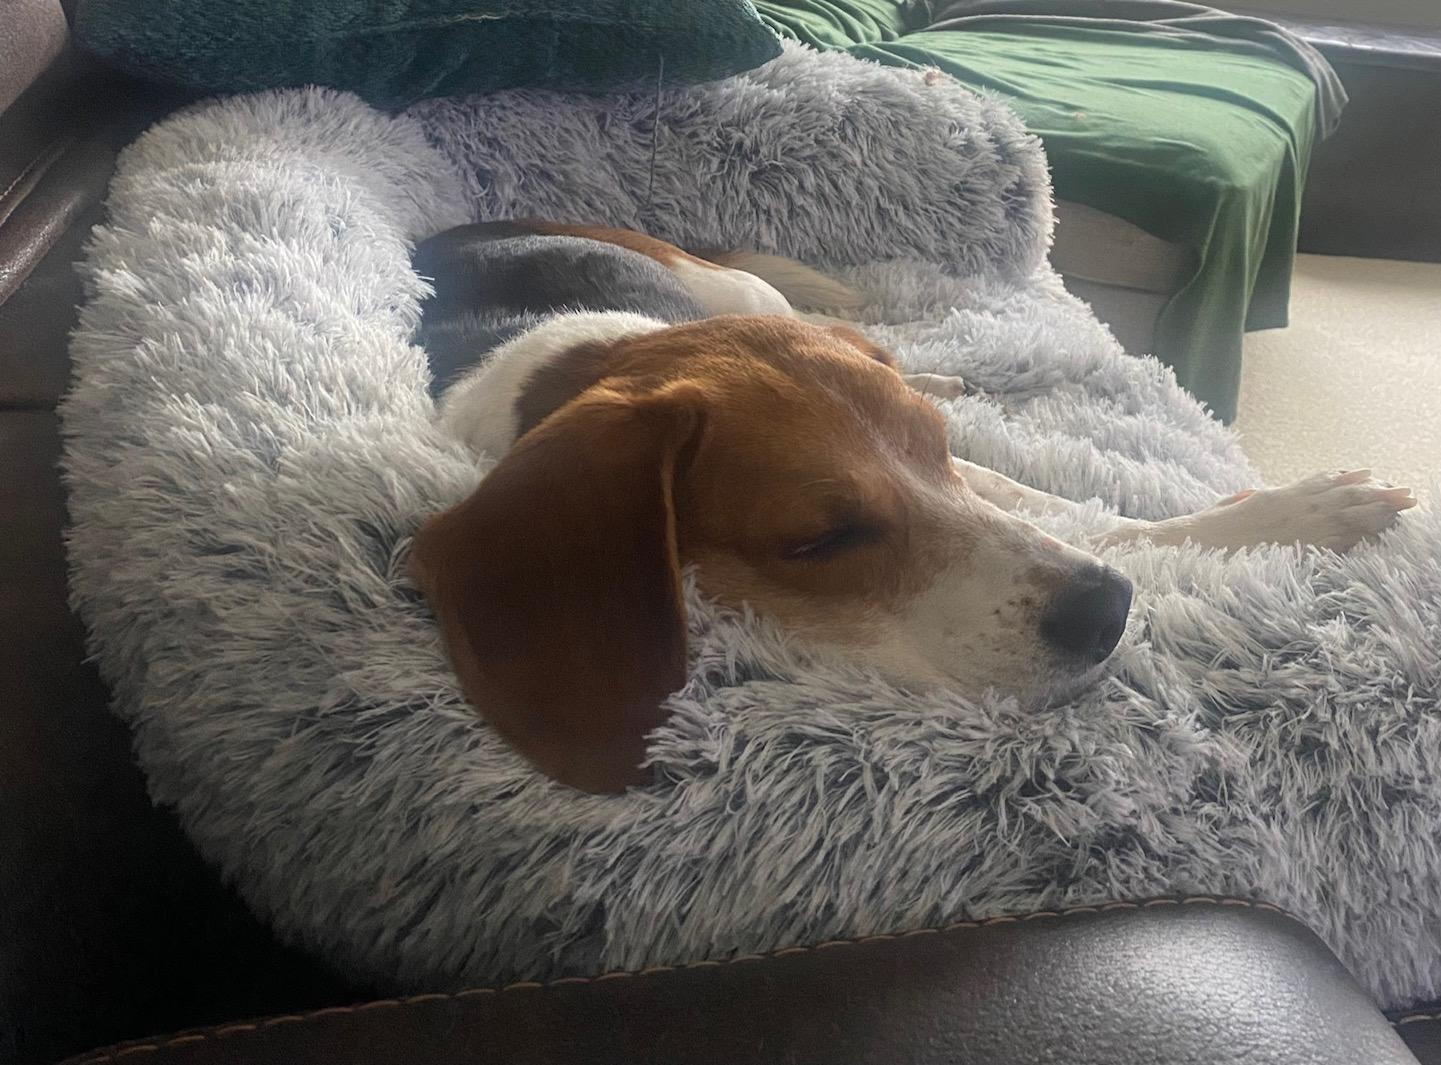 A beagle sleeps on a big plush dog bed.